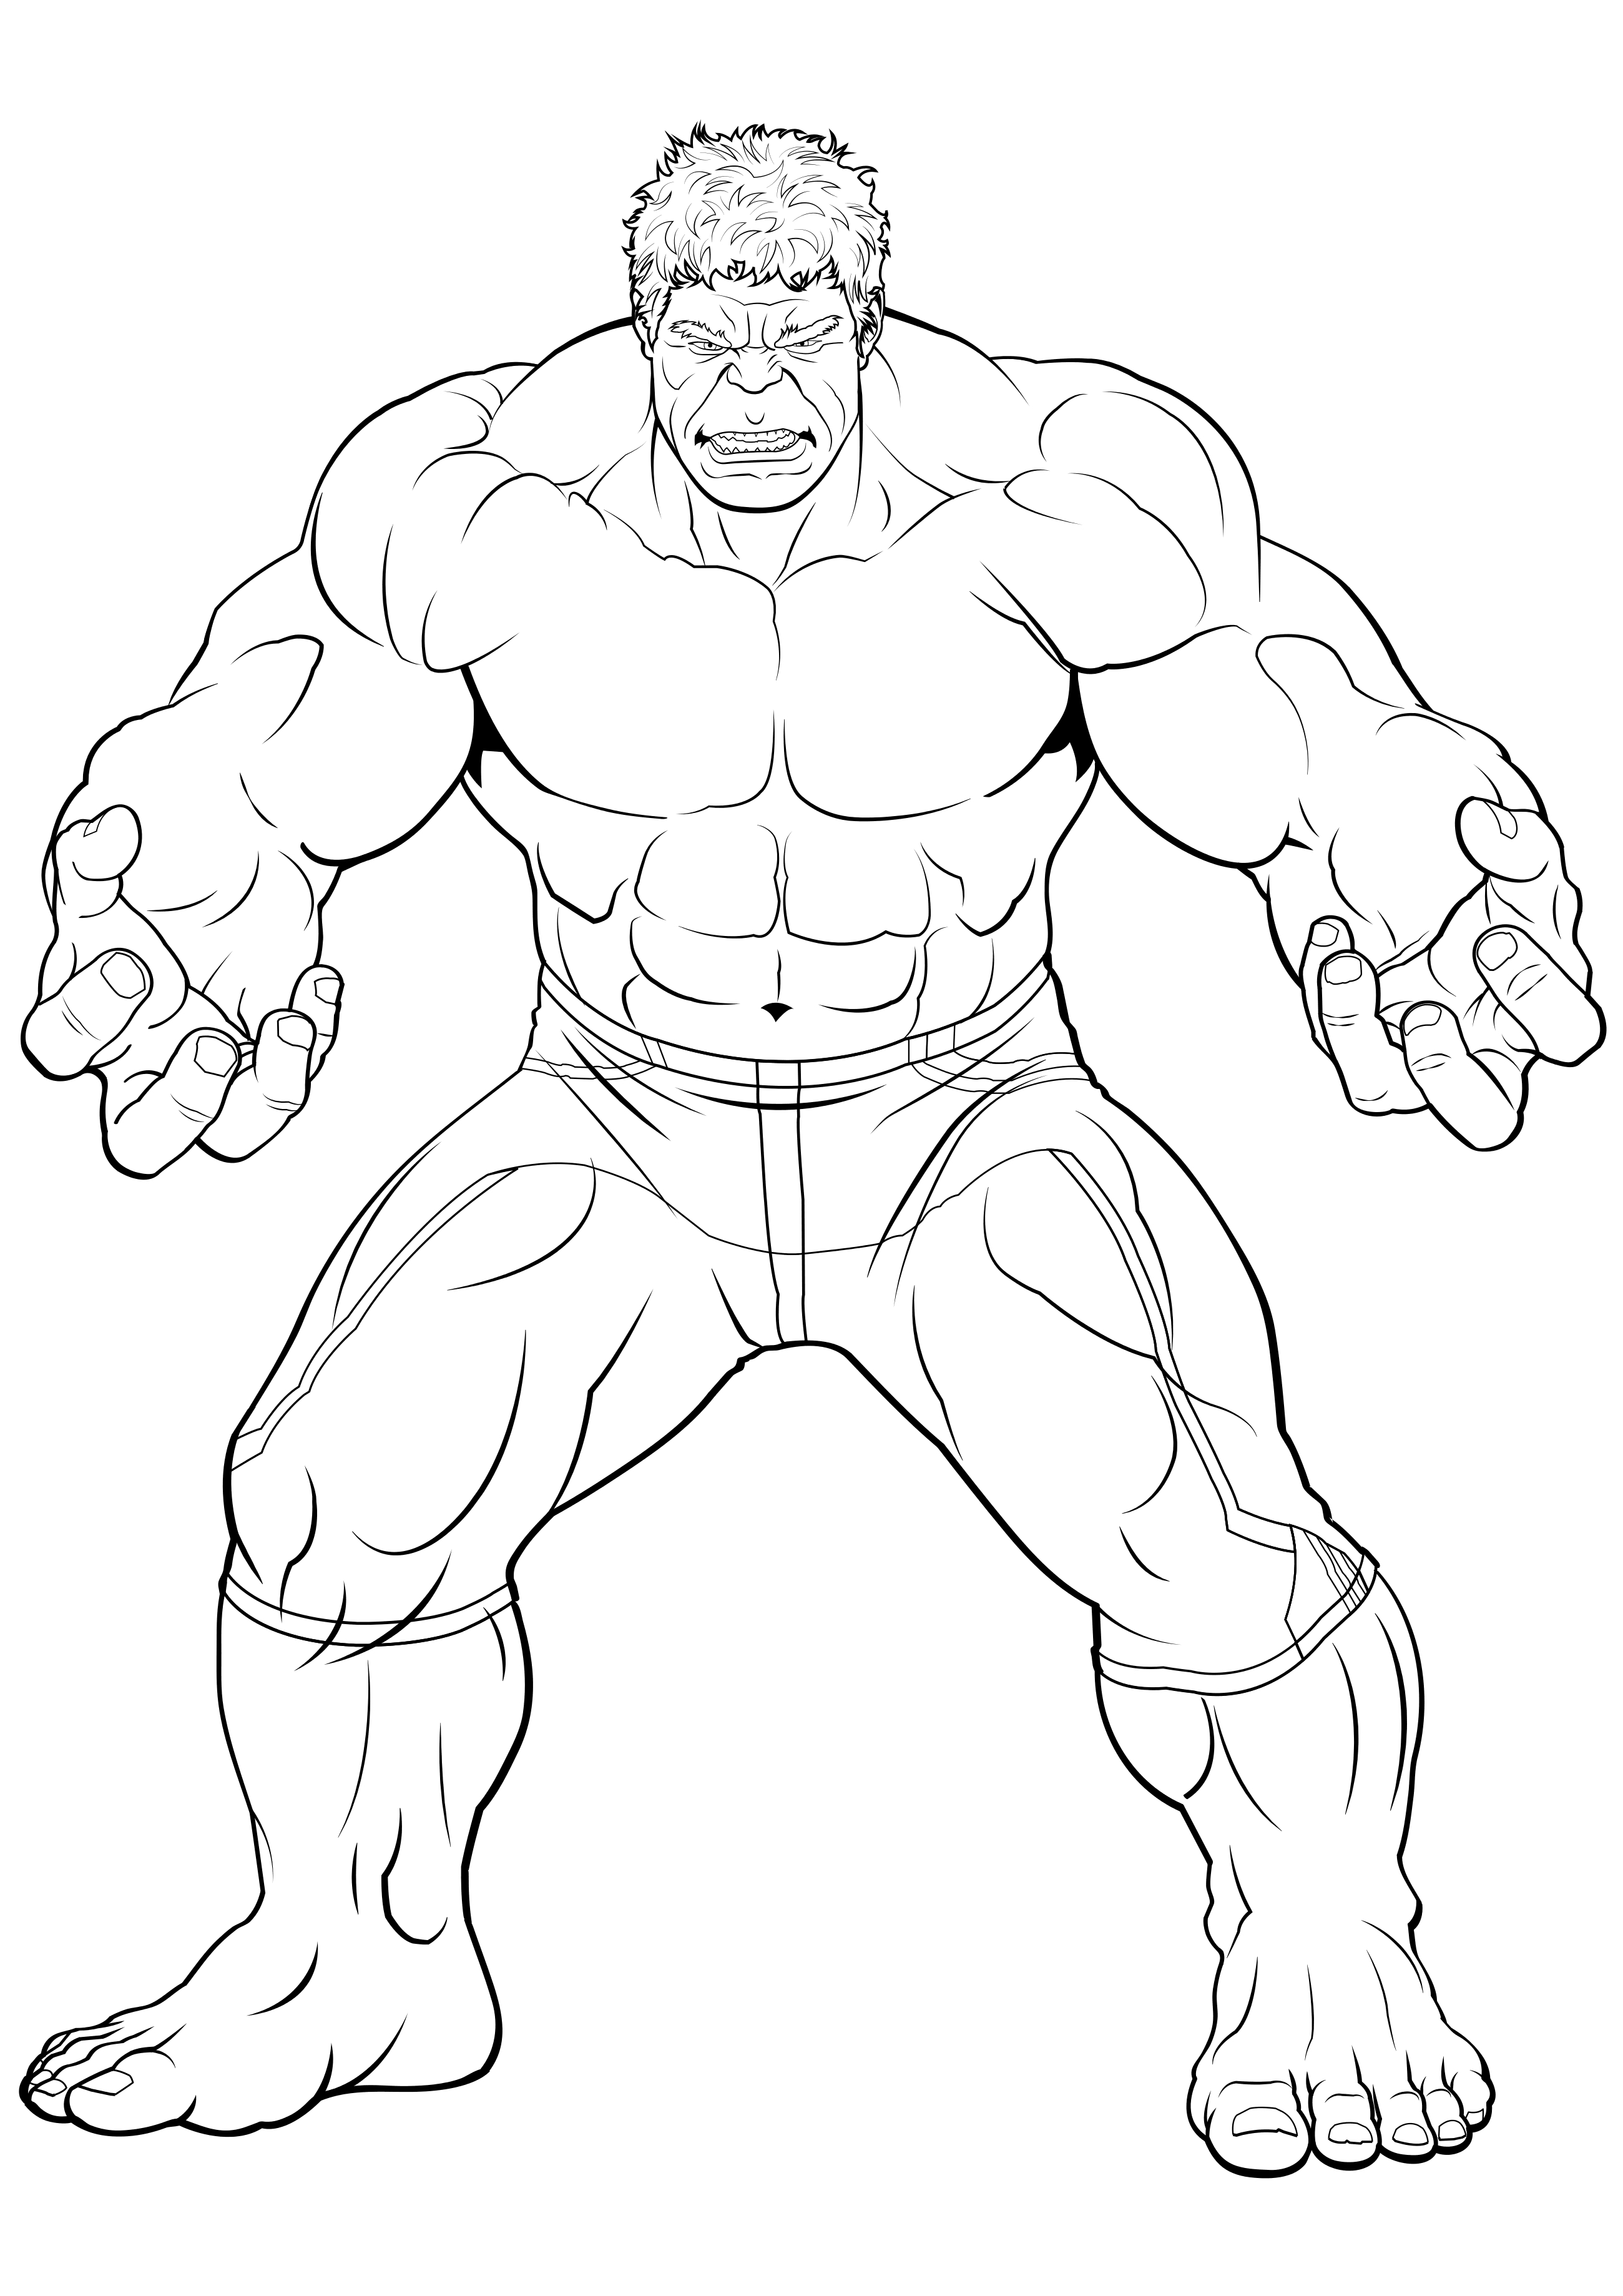 Ausmalbild Hulk Hulk in vollem Wachstum